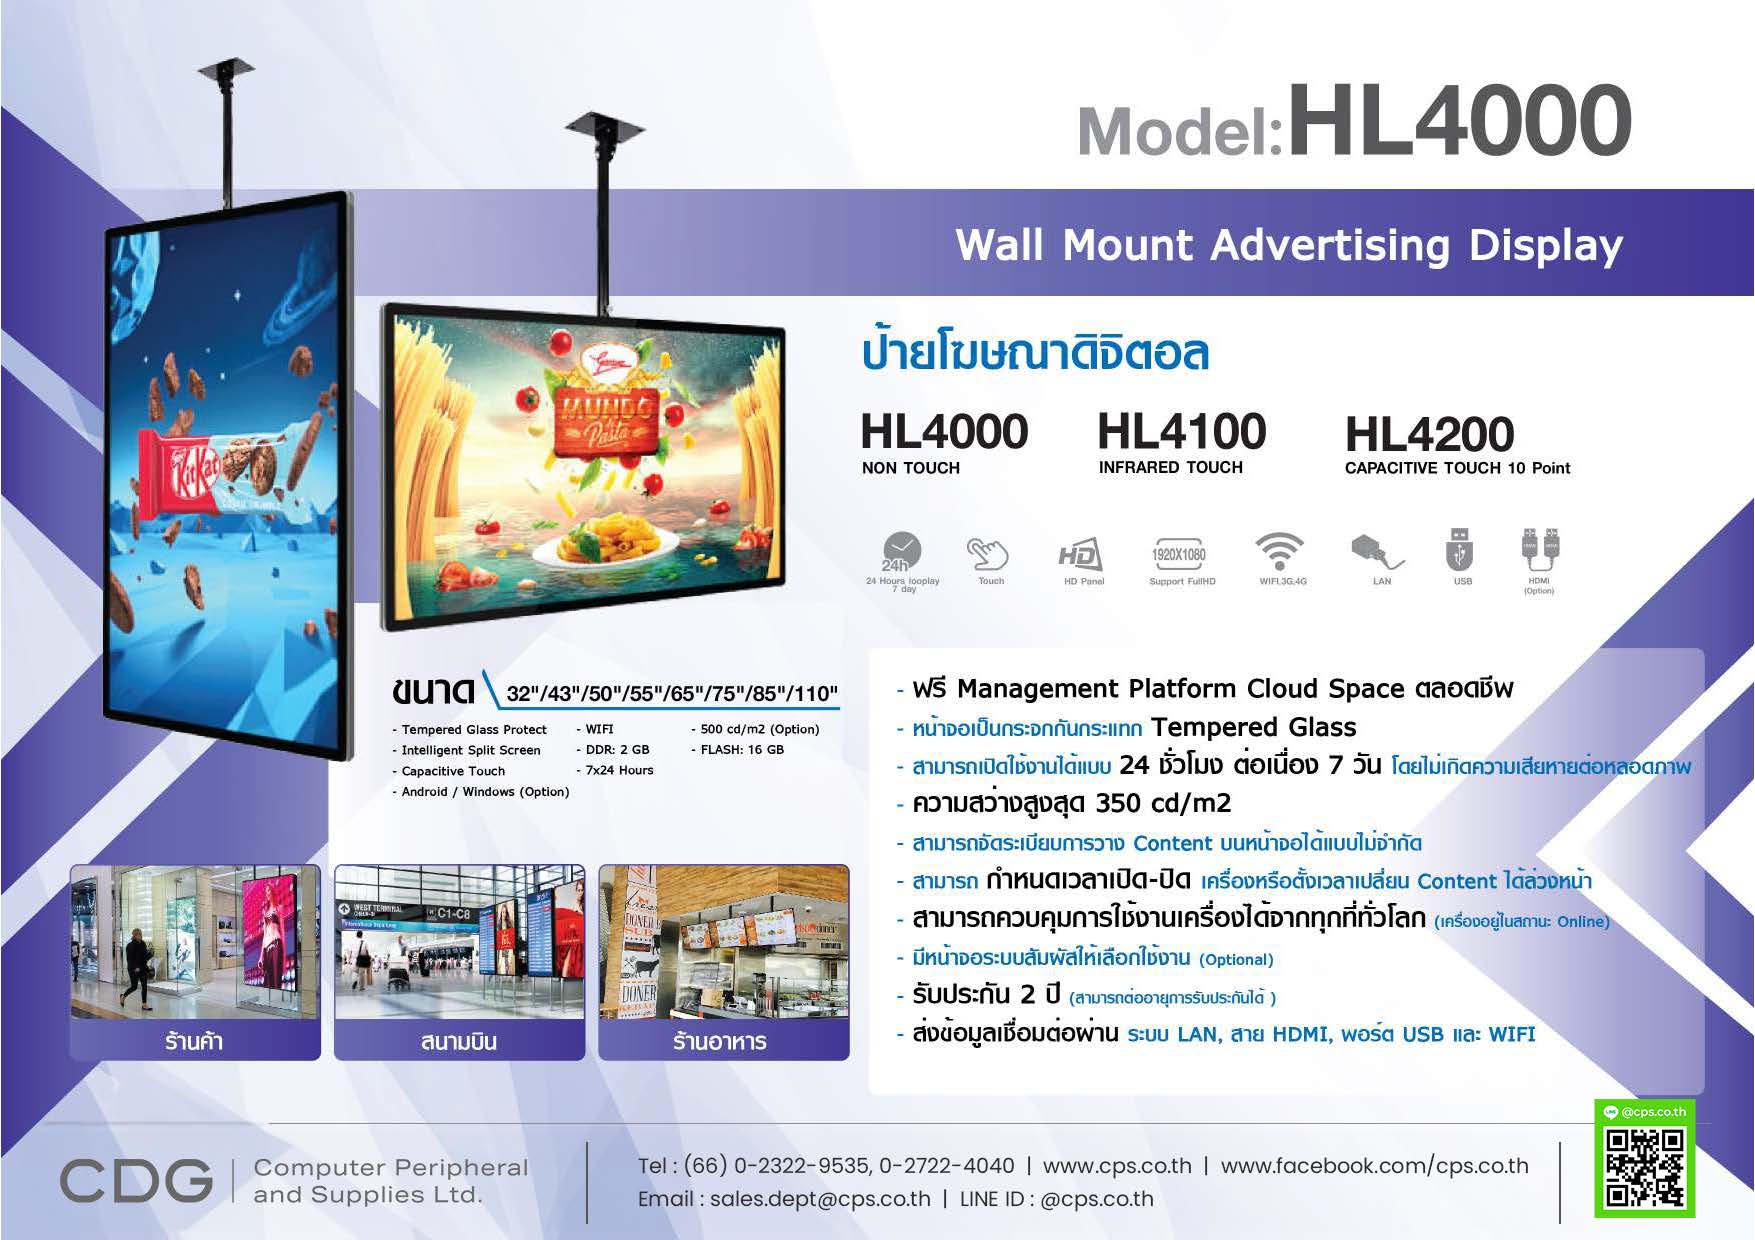 ป้ายโฆษณาดิจิตอล Wall Mount Display Model HL4000 (แบบแขวน)